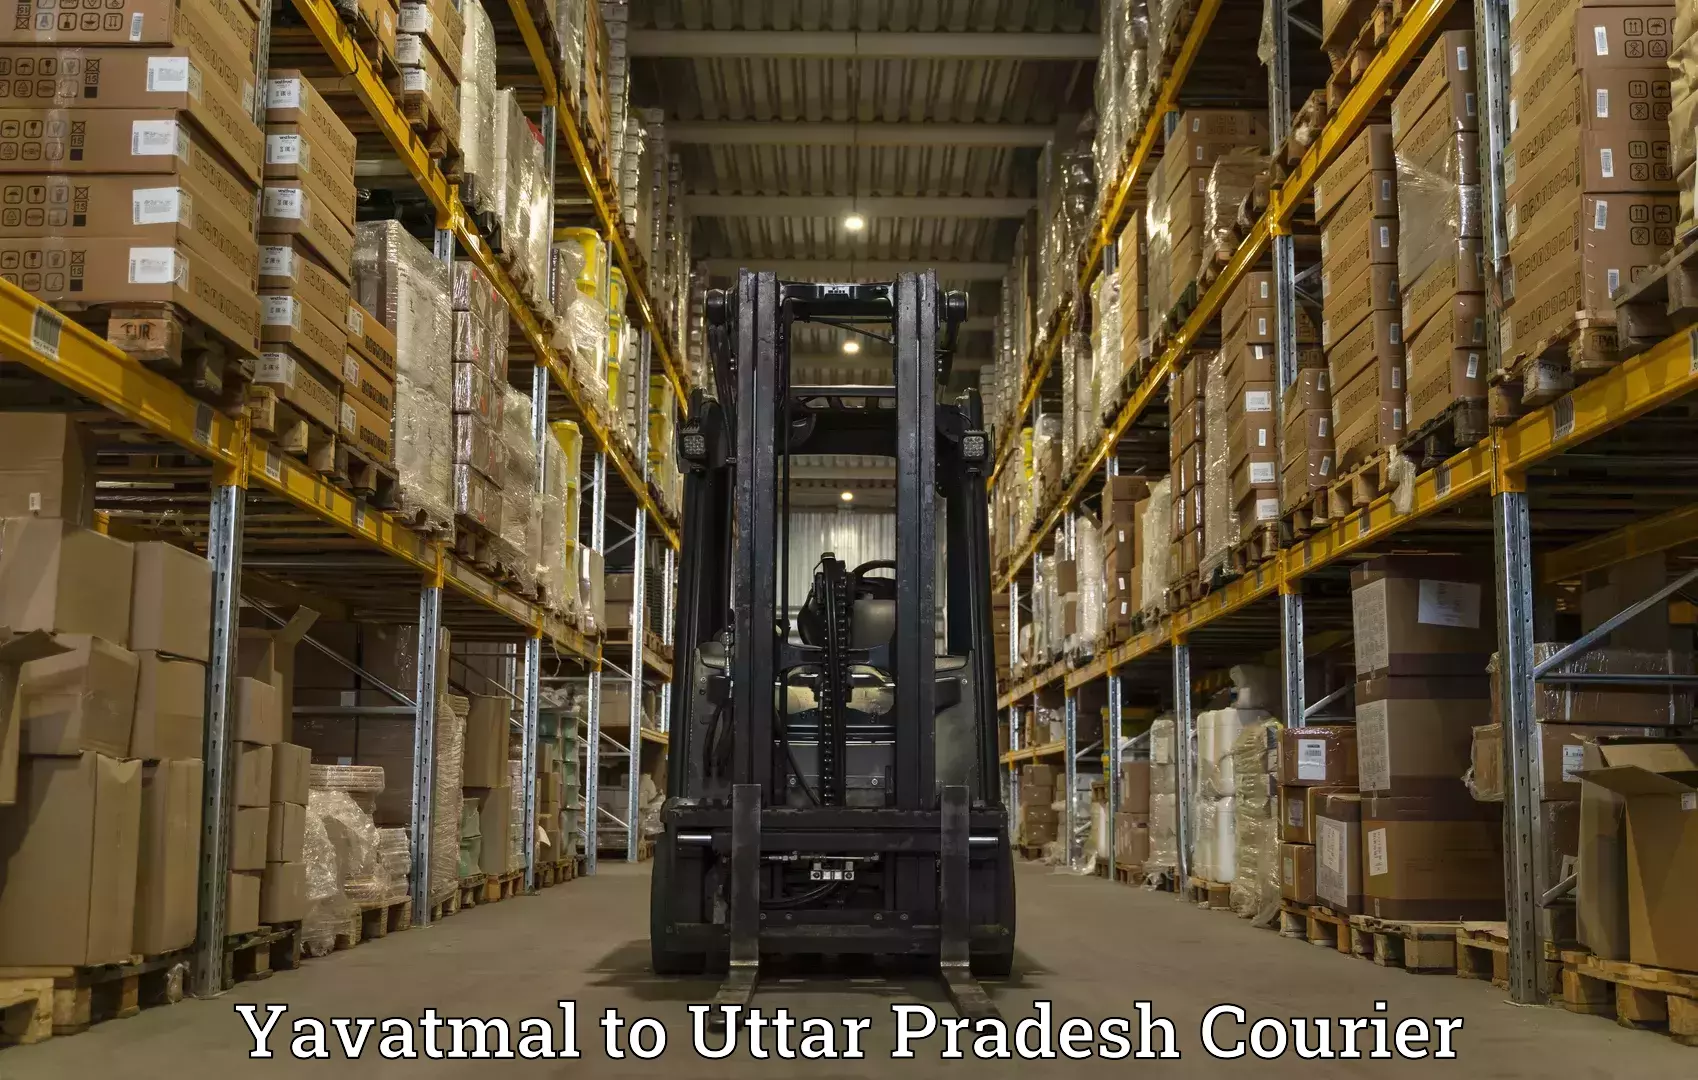 High-performance logistics Yavatmal to Uttar Pradesh